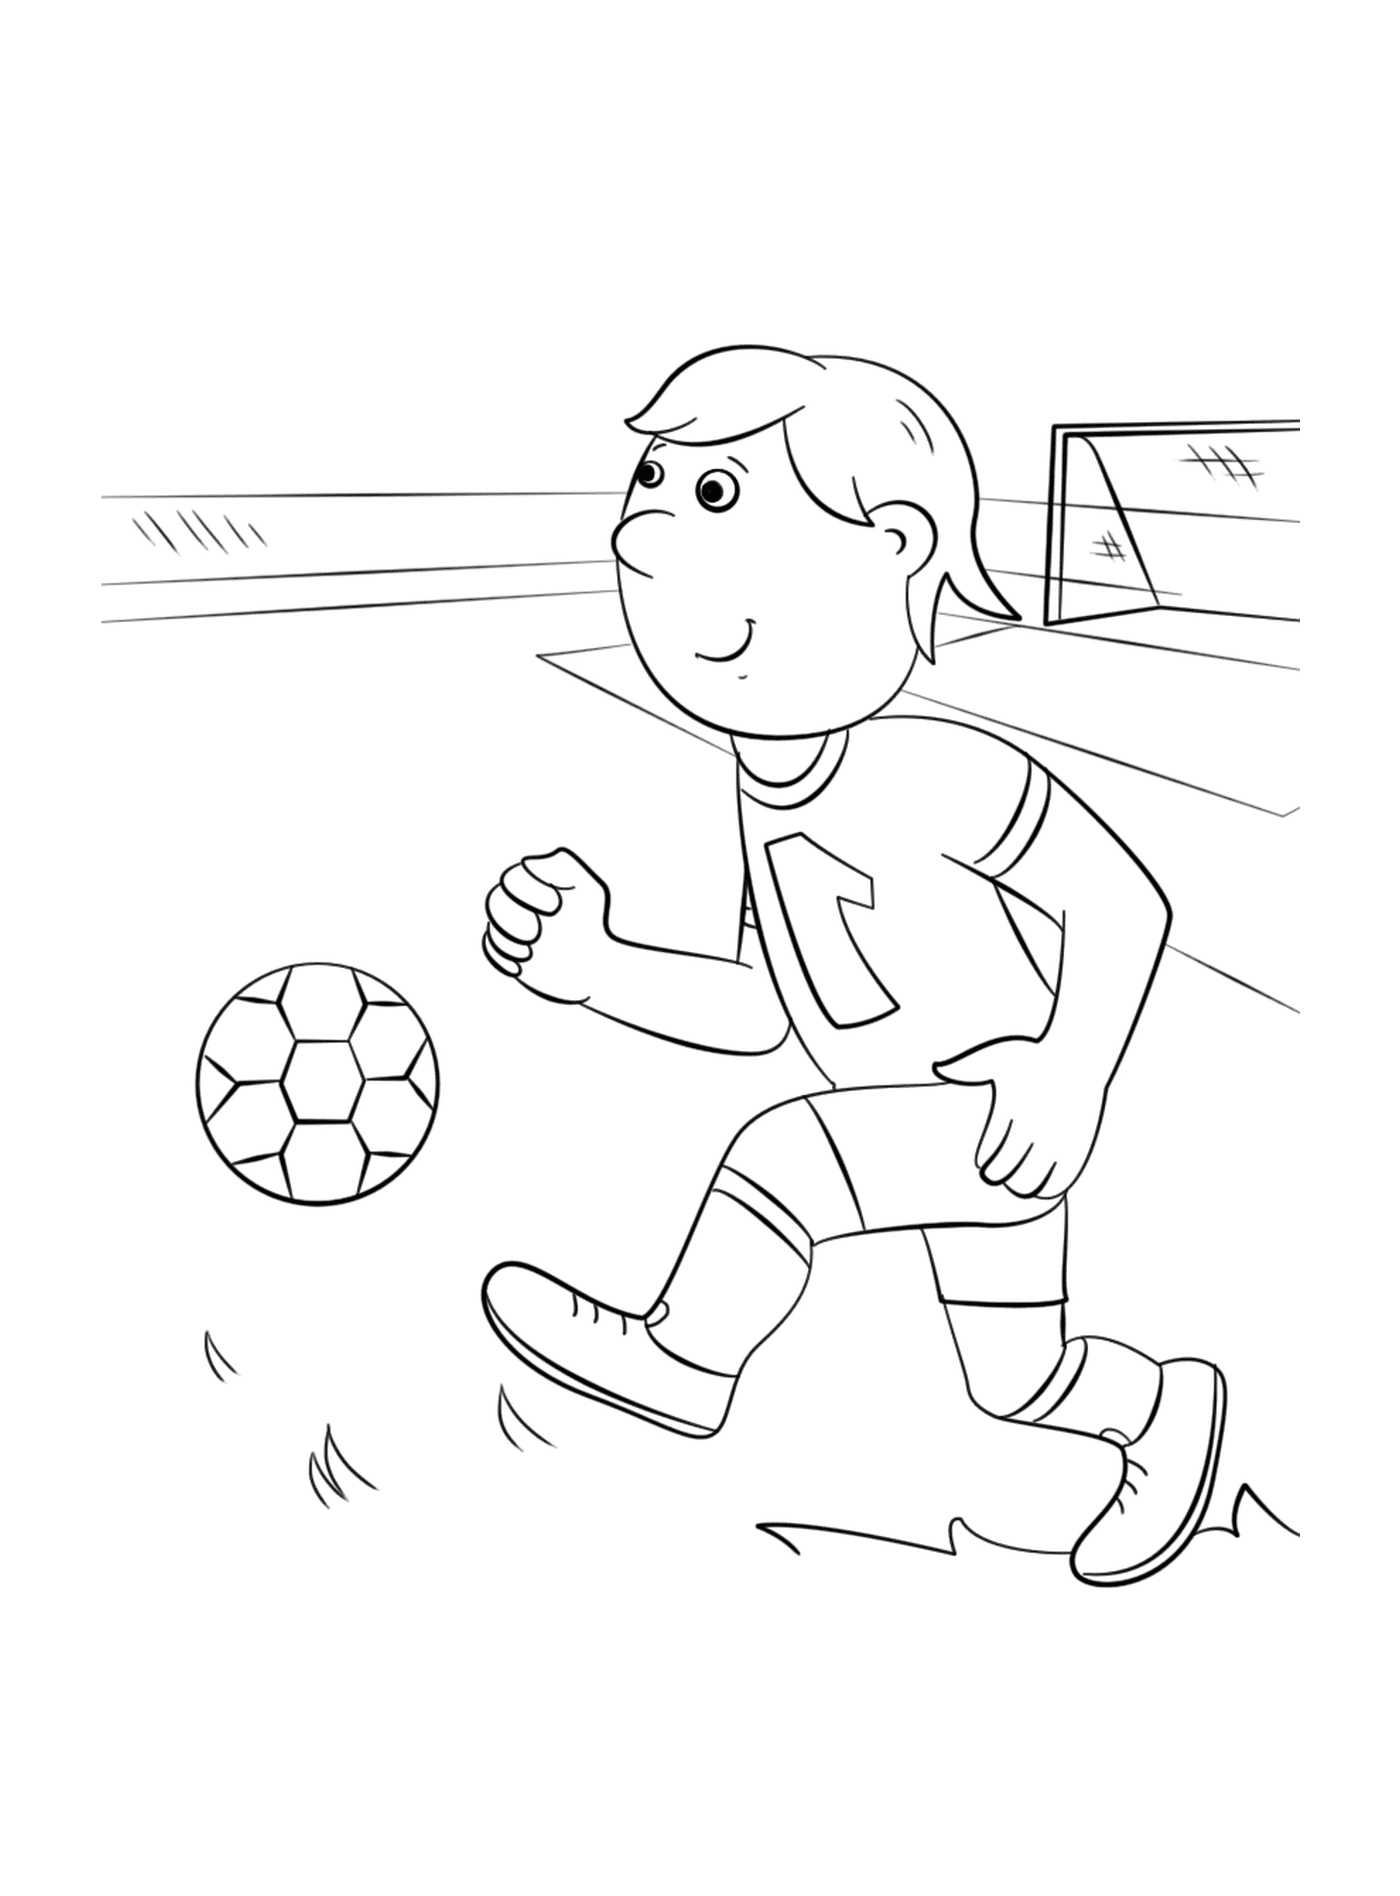  एक लड़का फुटबॉल खेल रहा है 